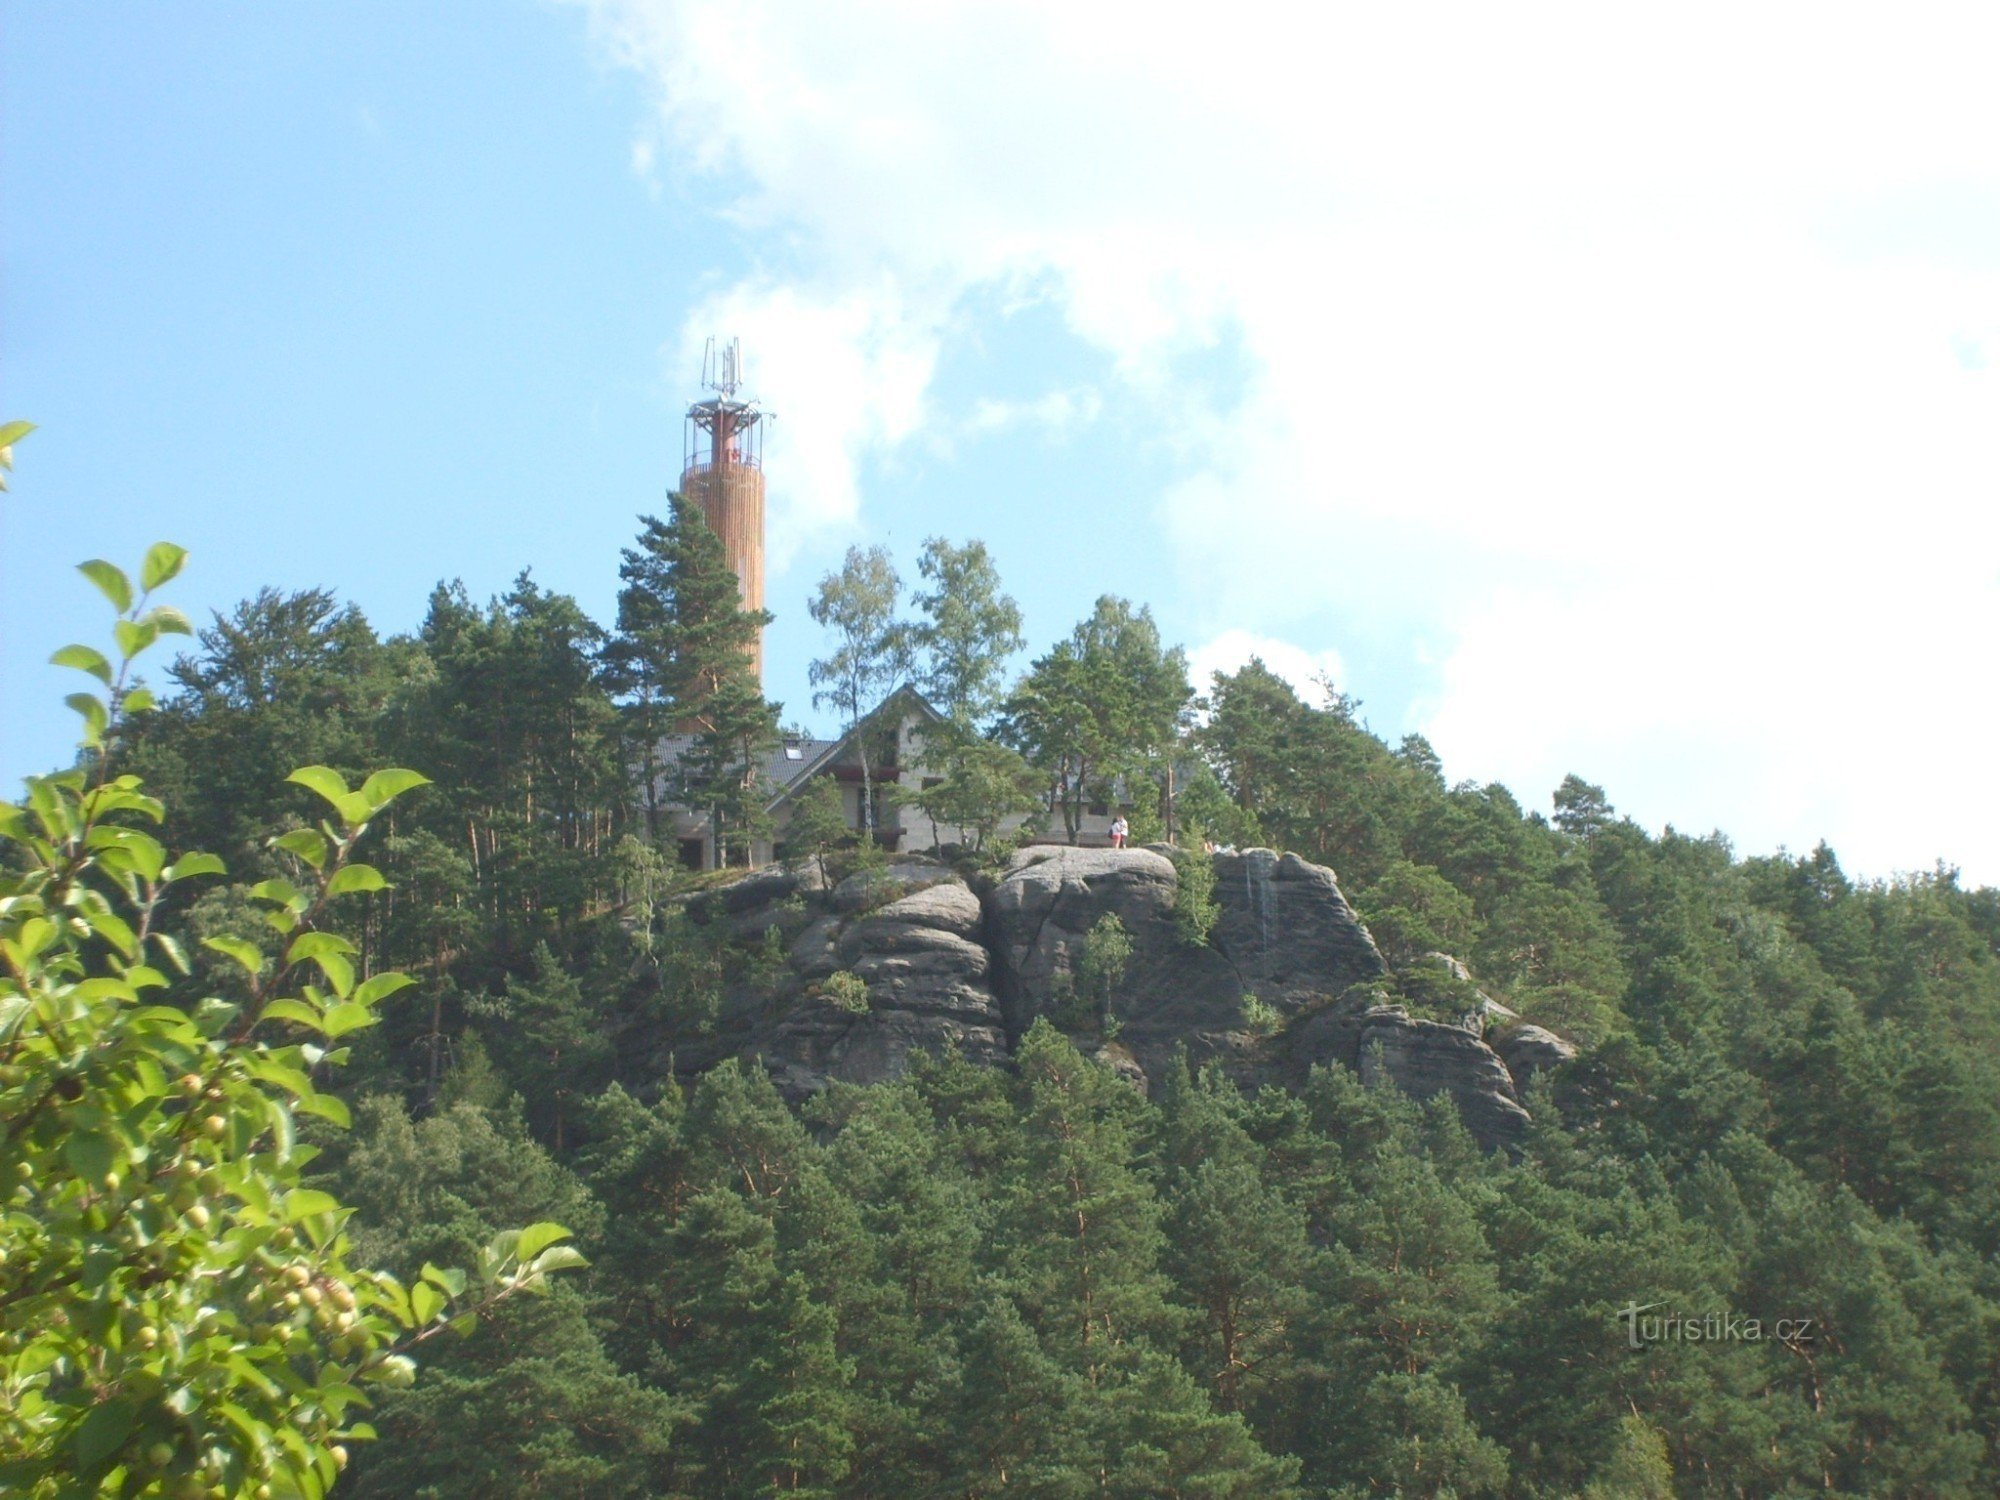 Op Stráž, een nieuw gebouwde uitkijktoren